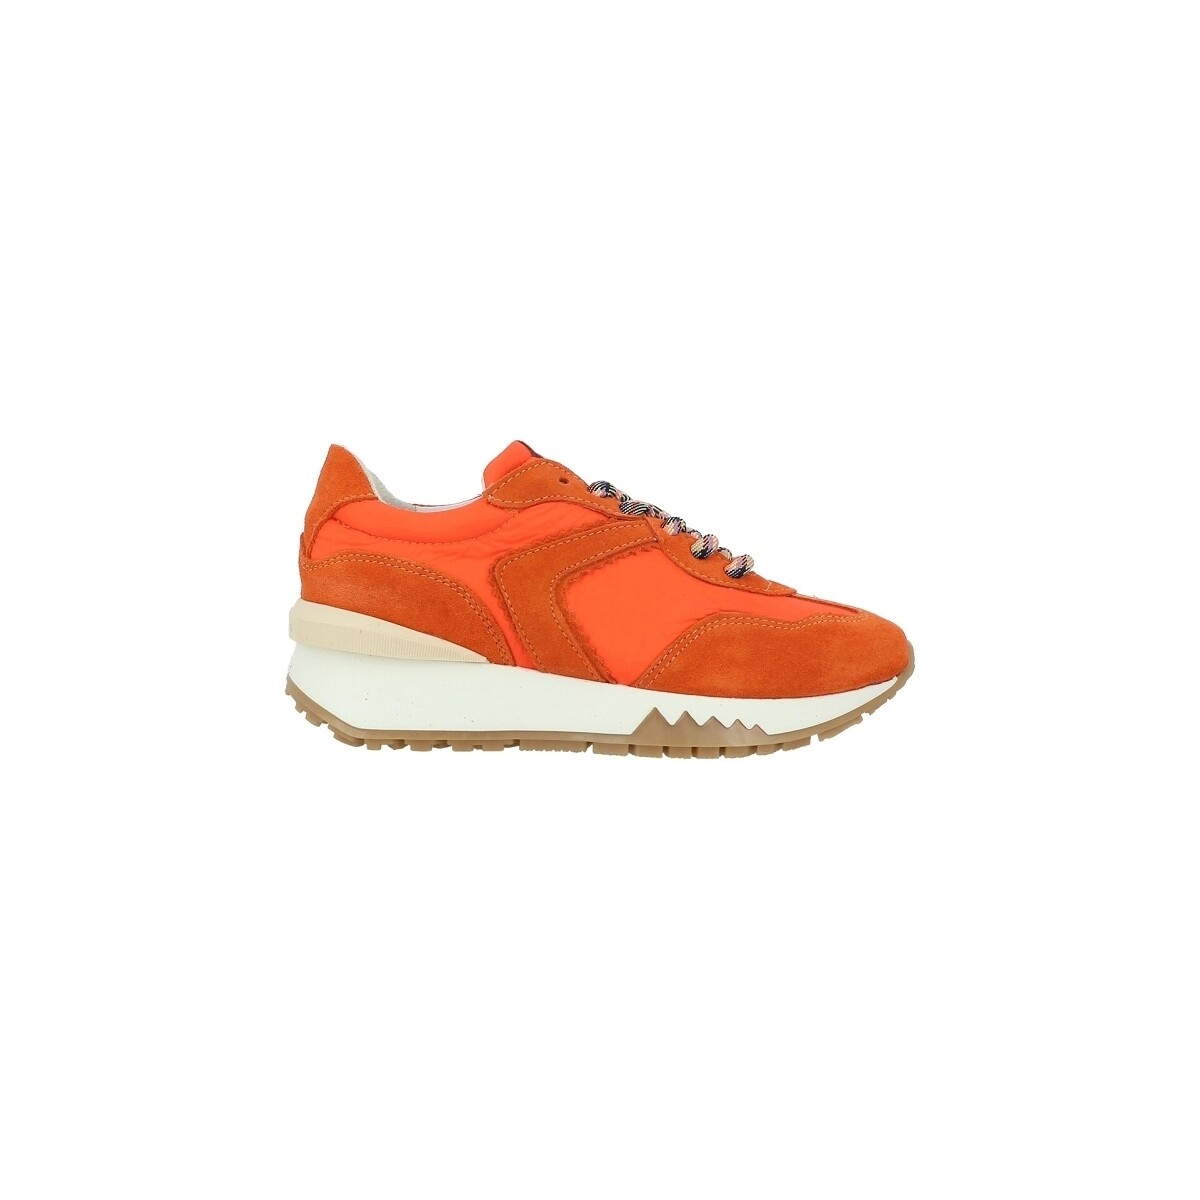 Schuhe Damen Sneaker Semerdjian MALU Orange